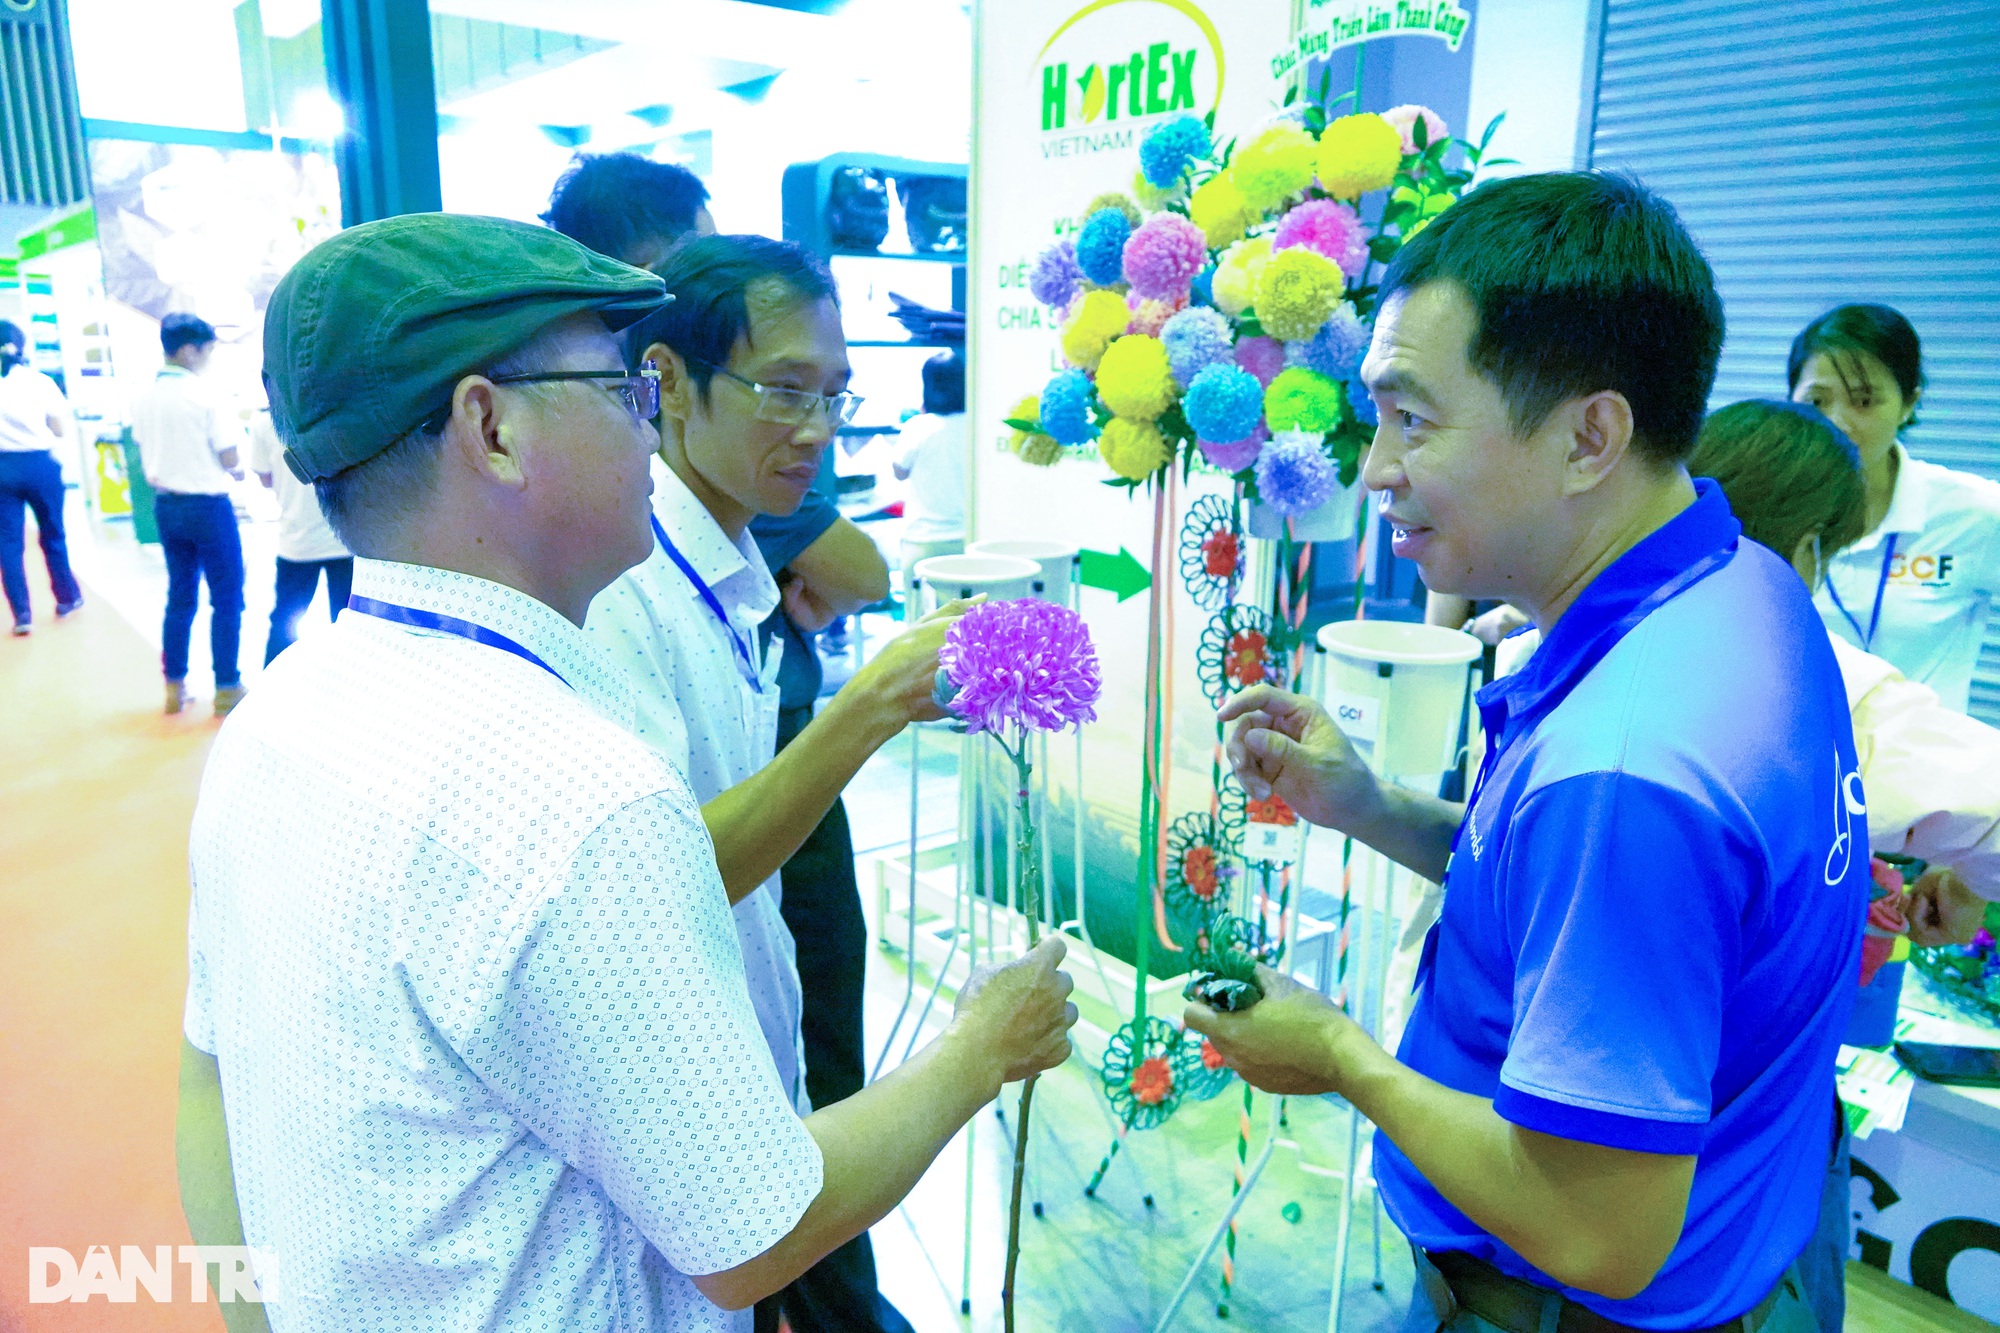 TP. Hồ Chí Minh: Kỹ sư điện biến hoa héo thành hoa tươi trong một nốt nhạc - Ảnh 1.